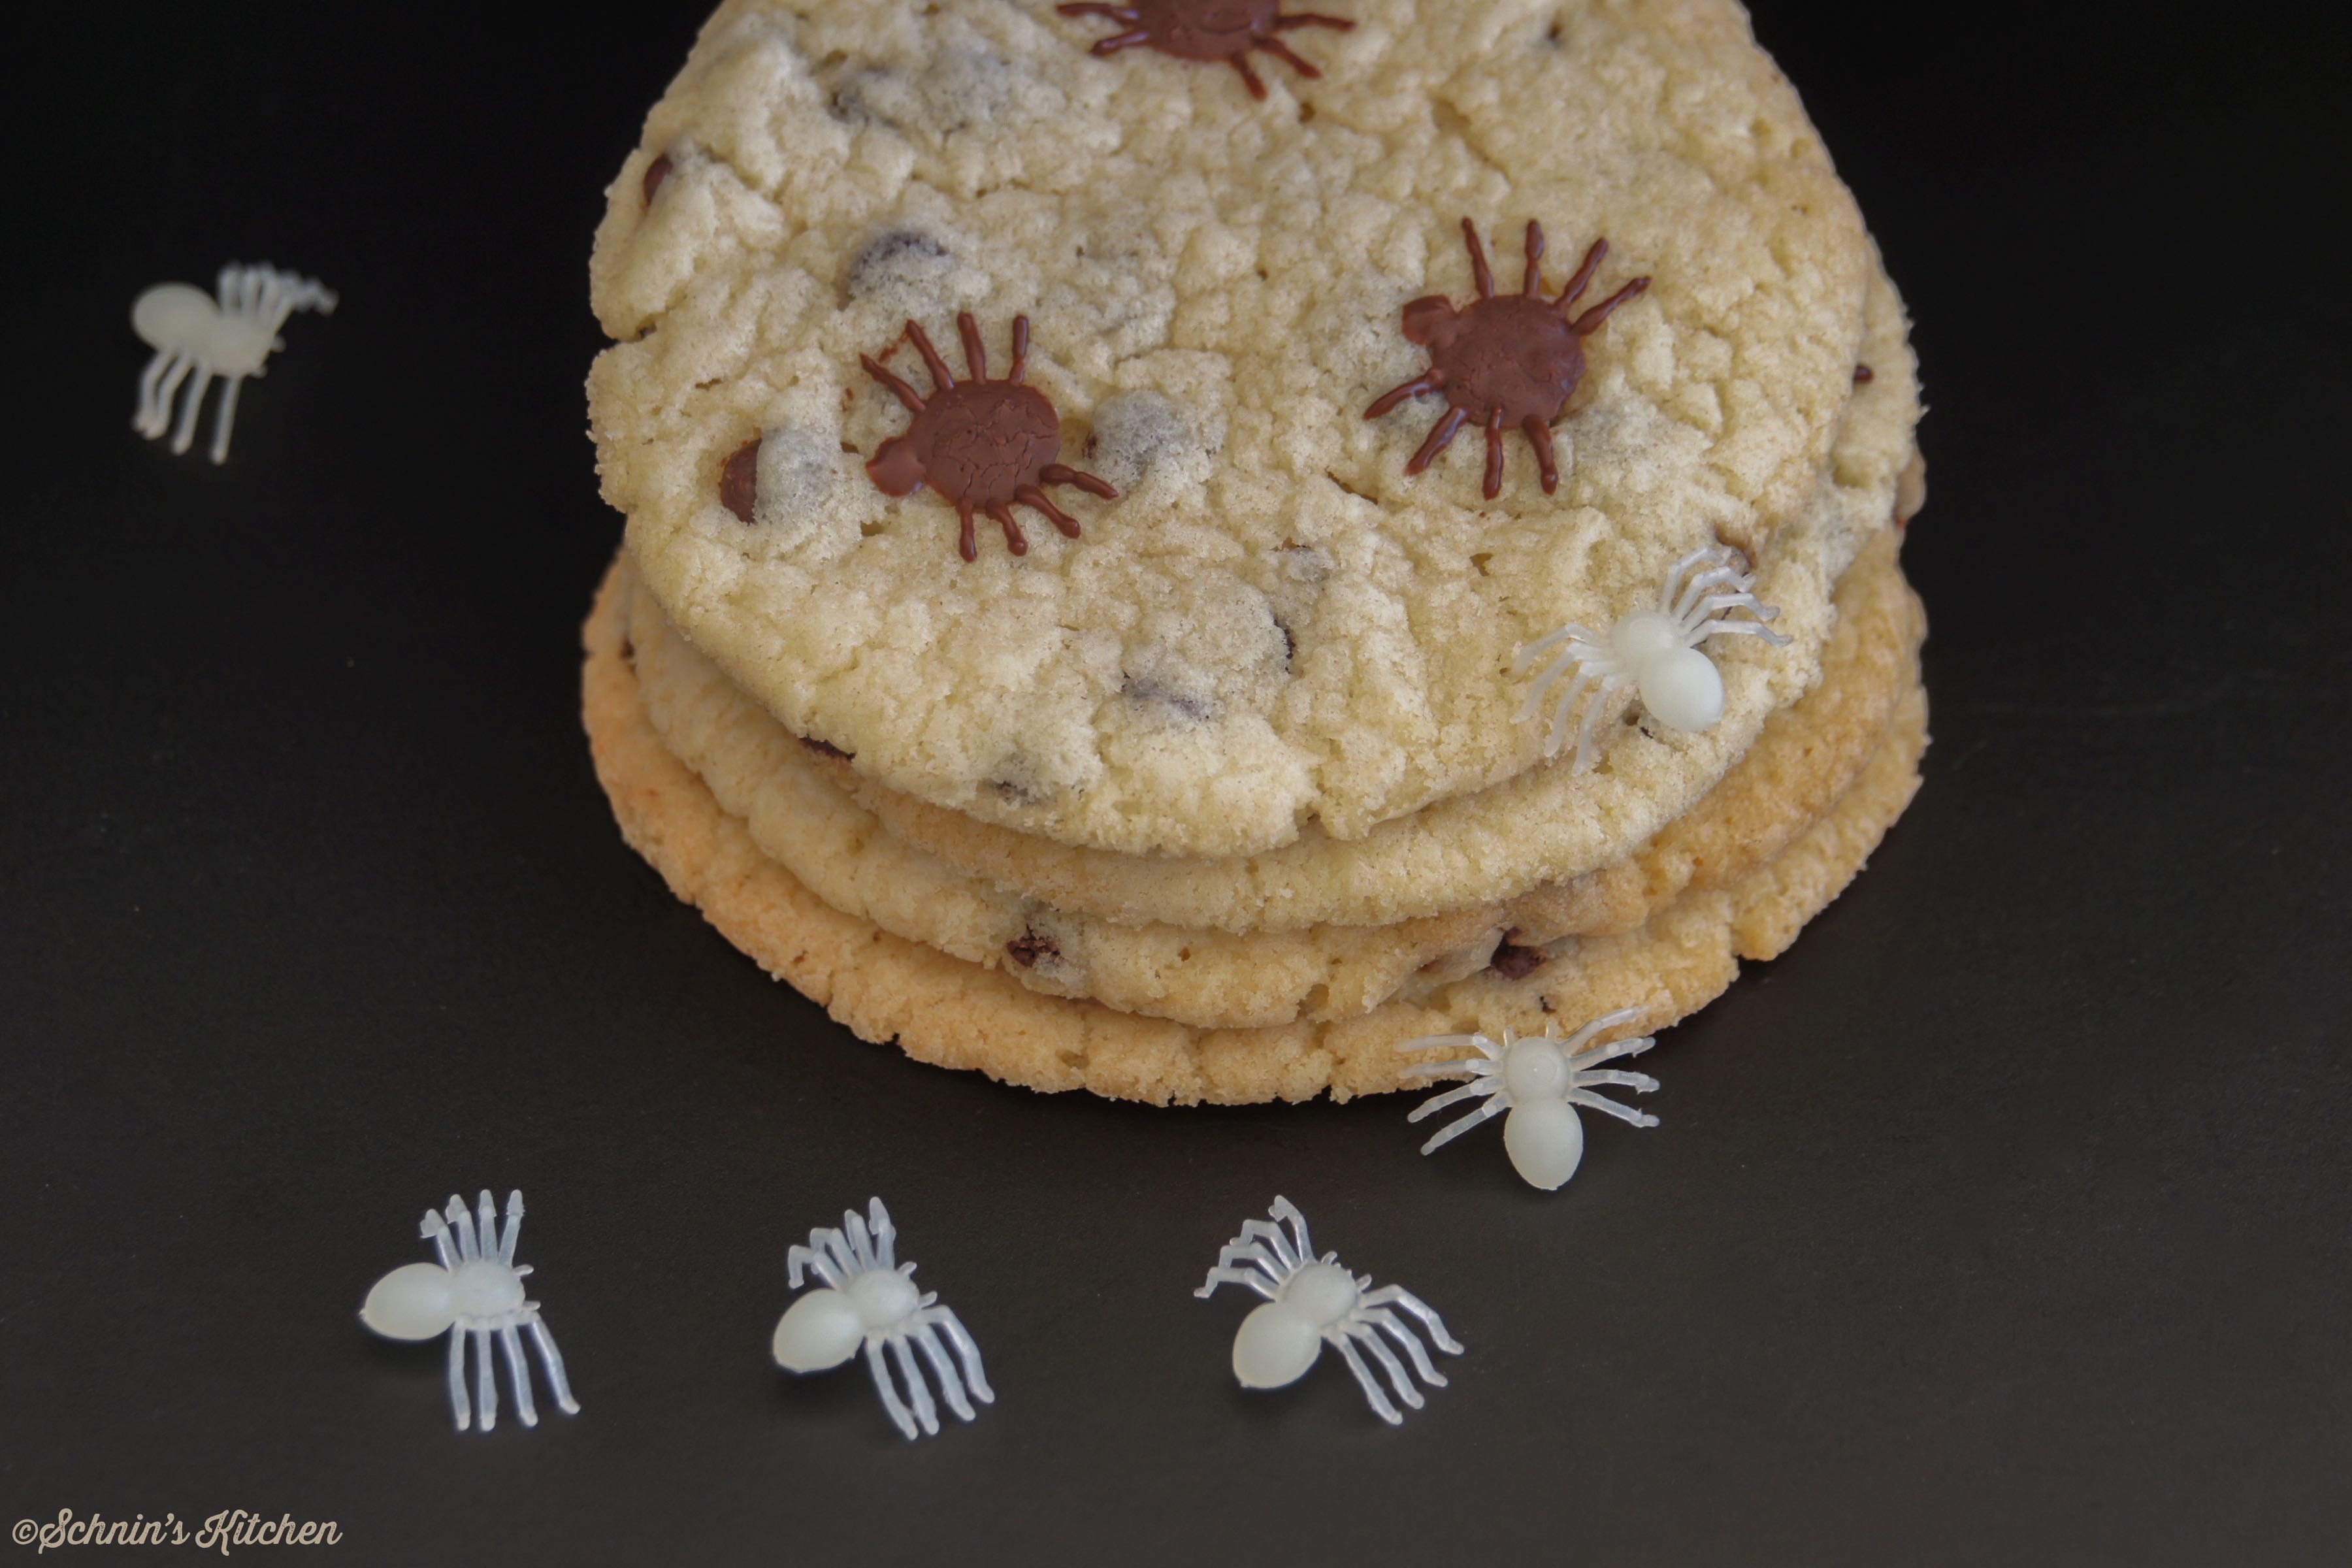 Schnin's Kitchen: Spinnen-Cookies mit Chocolate Chips zu Halloween